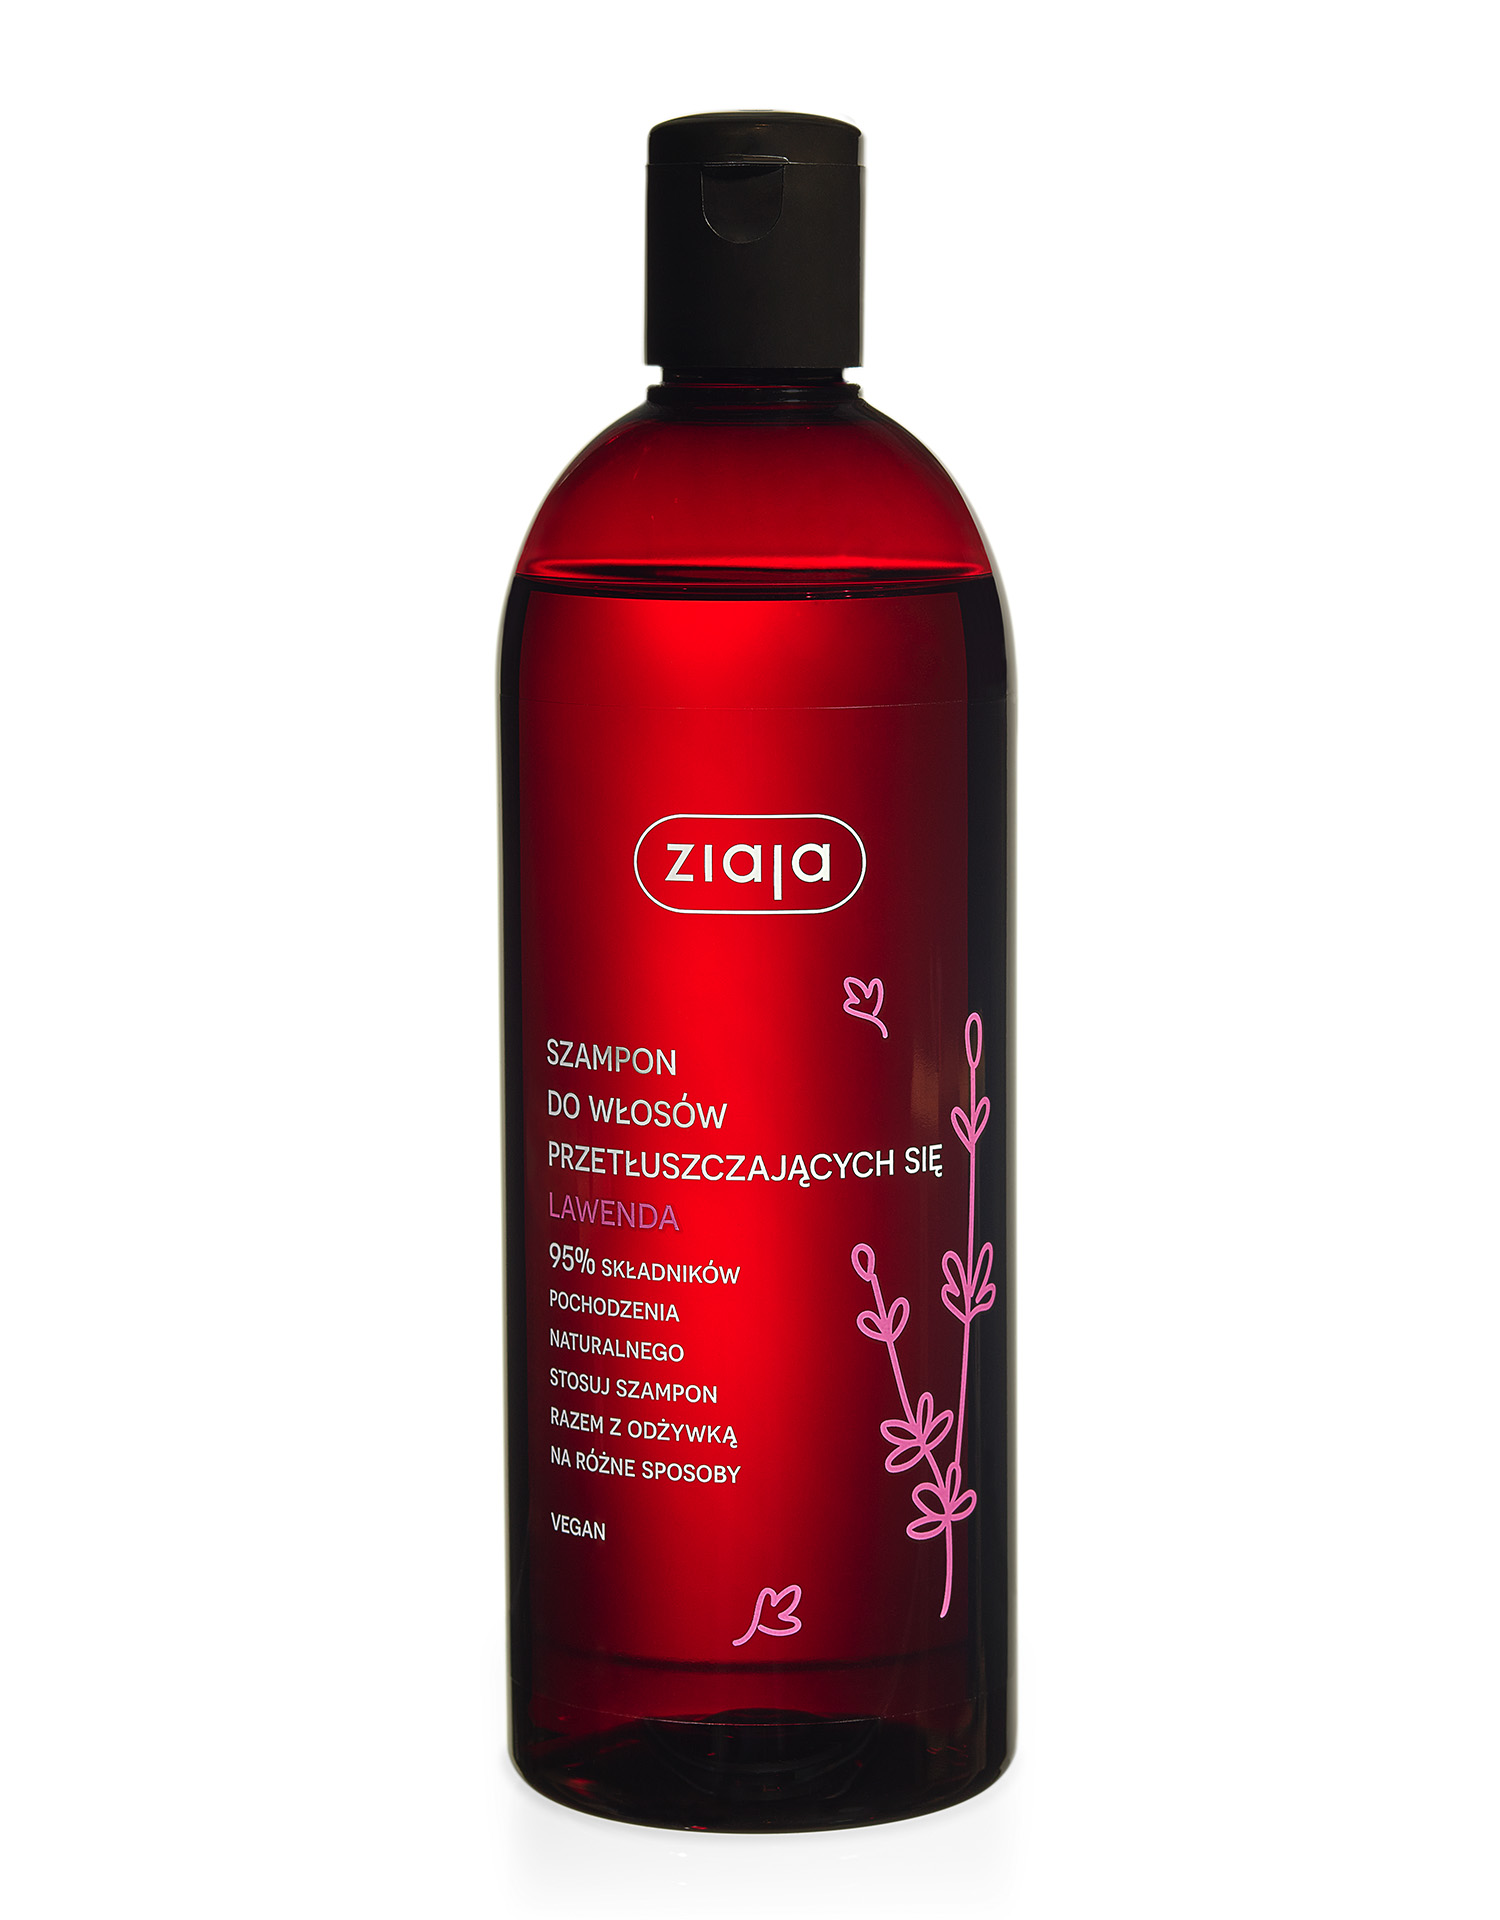 ziaja szampon do włosów przetłuszczających się lawendowy